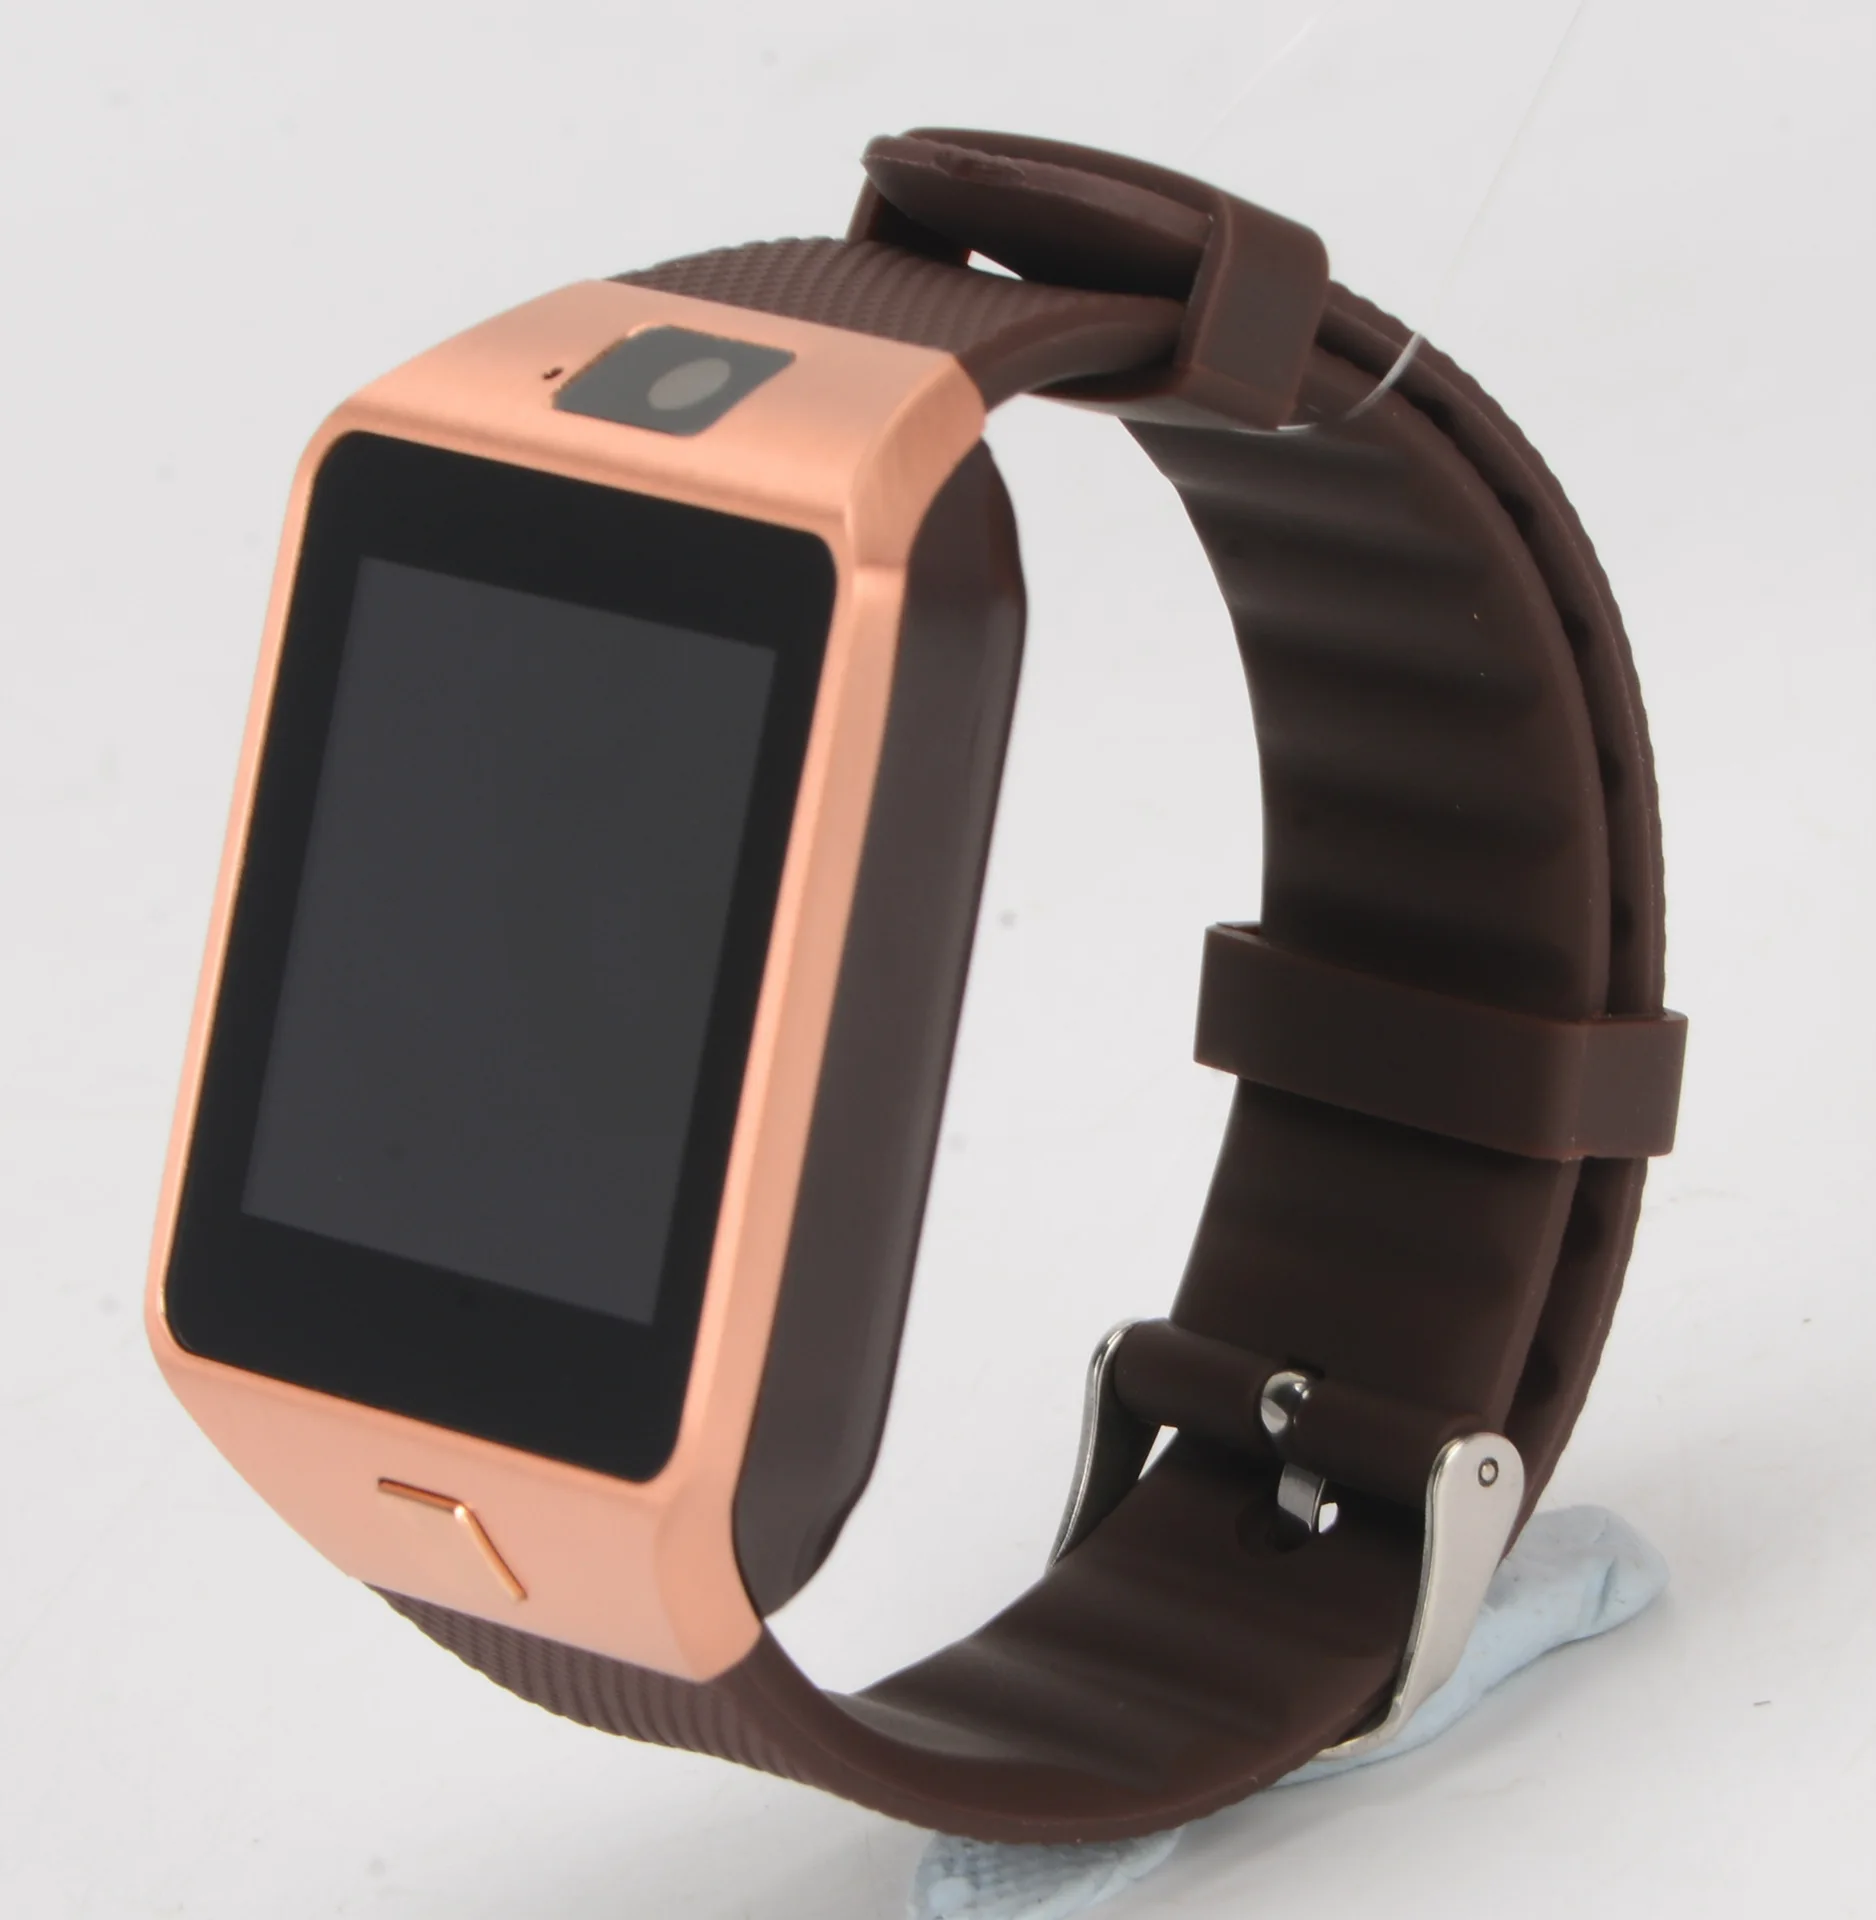 Умные часы OUTMIX DZ09 электронные мужские часы для Apple iPhone samsung Android мобильный телефон Bluetooth SIM tf-карта камера